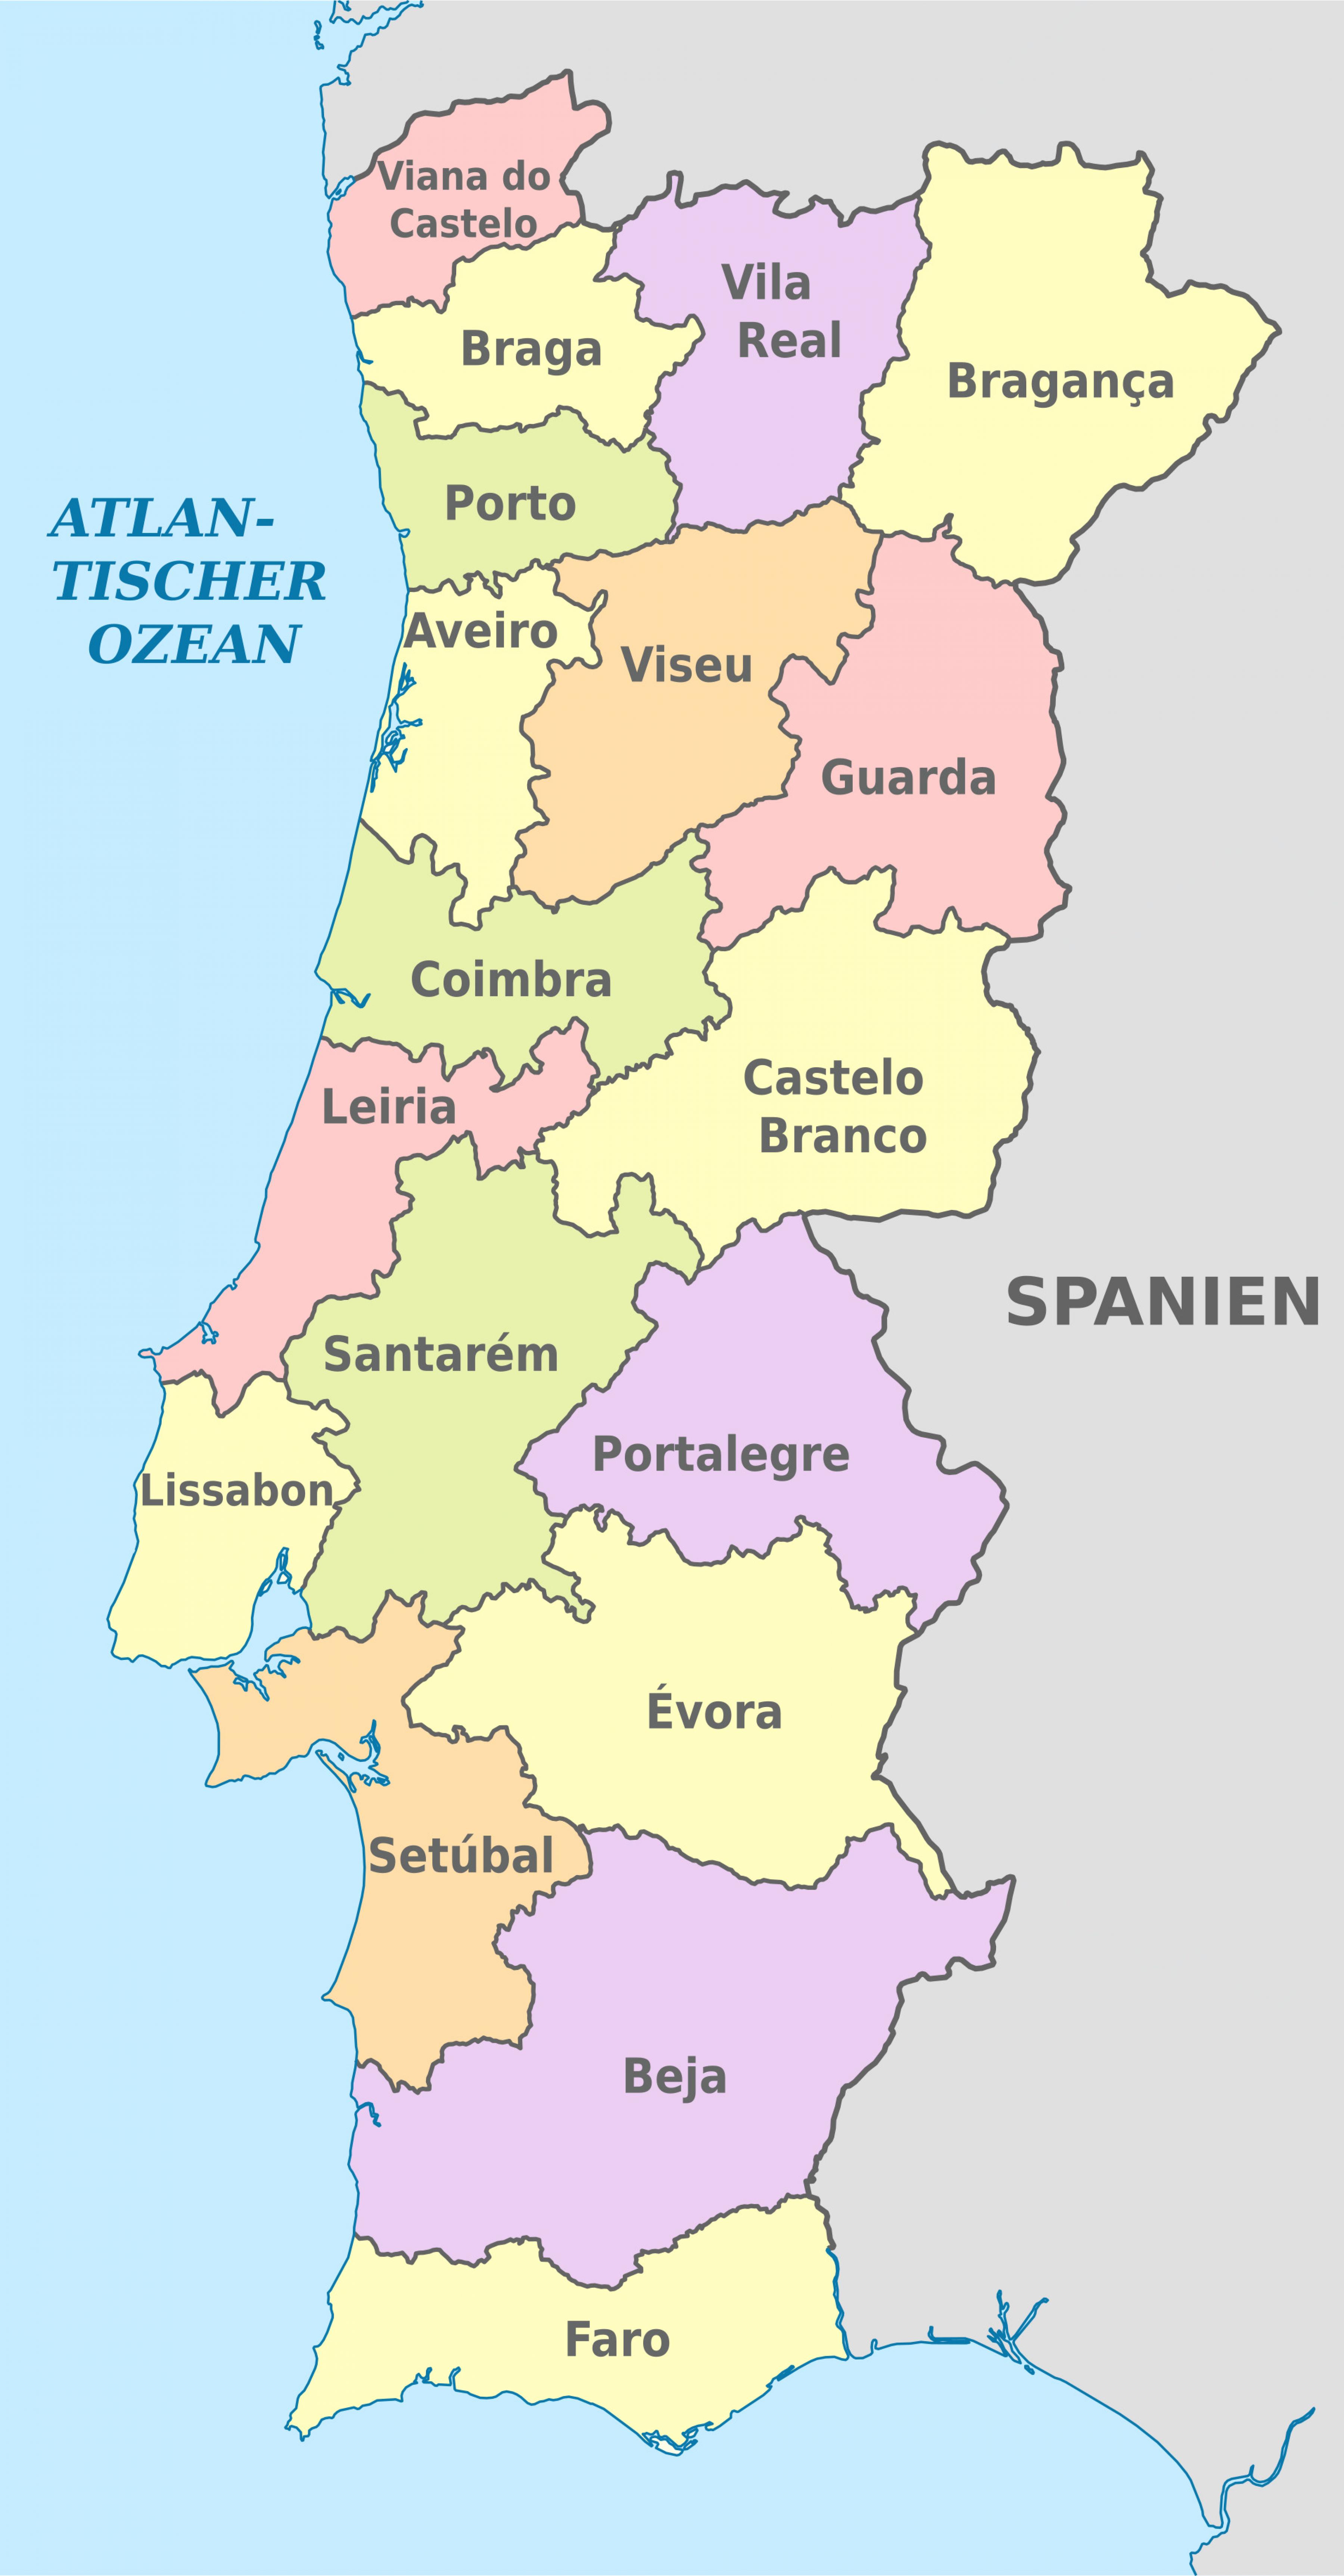 Mapa das regiões de Portugal: mapa político e de estado de Portugal